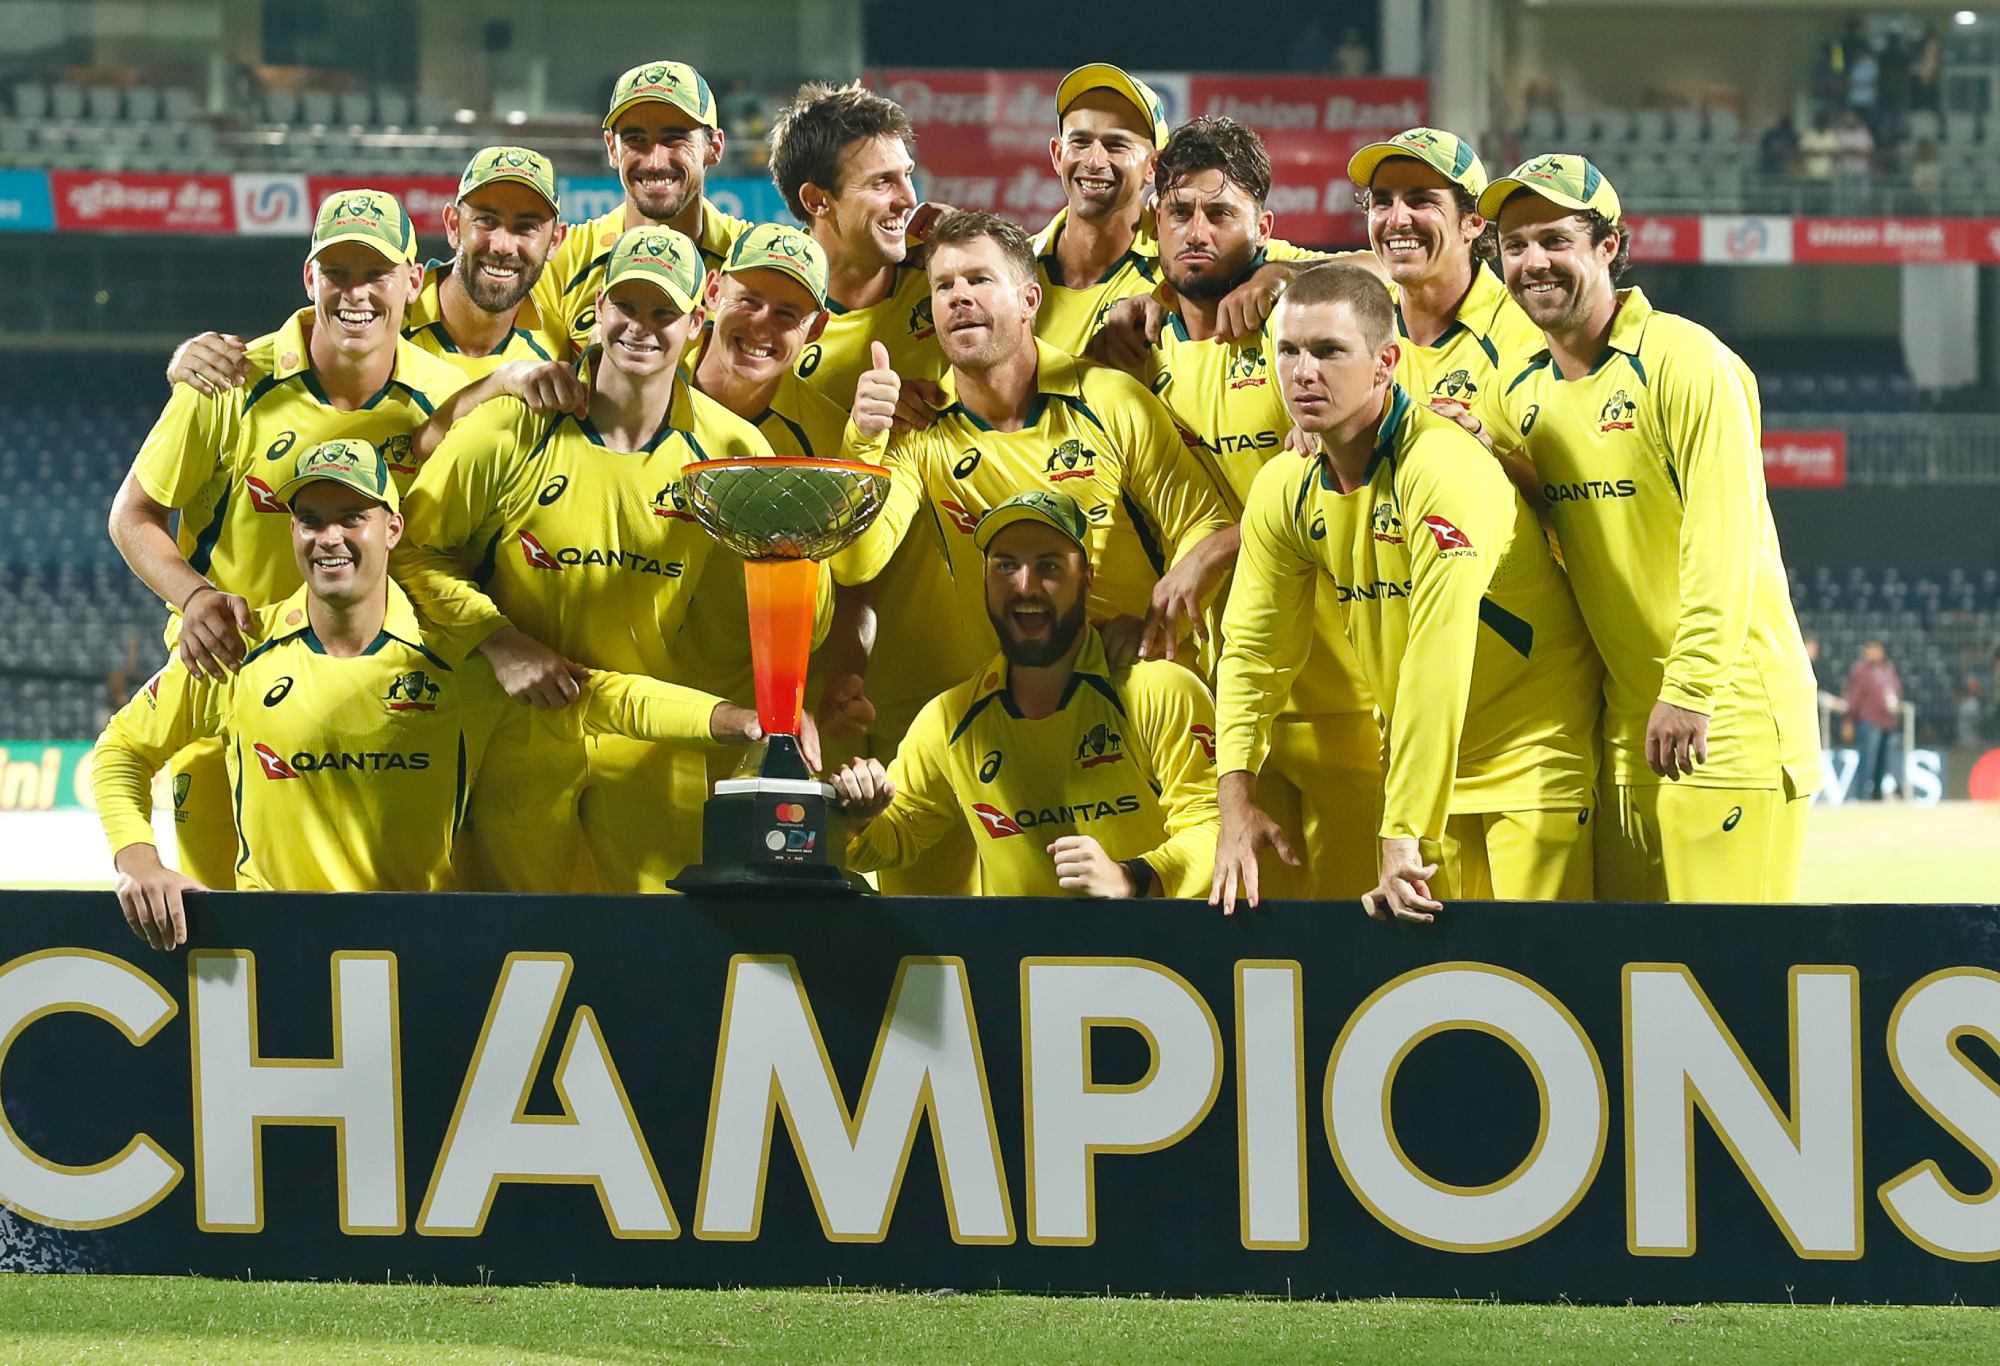 Pergantian Warner gagal, tetapi Zampa dan Agar memutar Aussies untuk meraih kemenangan seri yang menakjubkan atas India